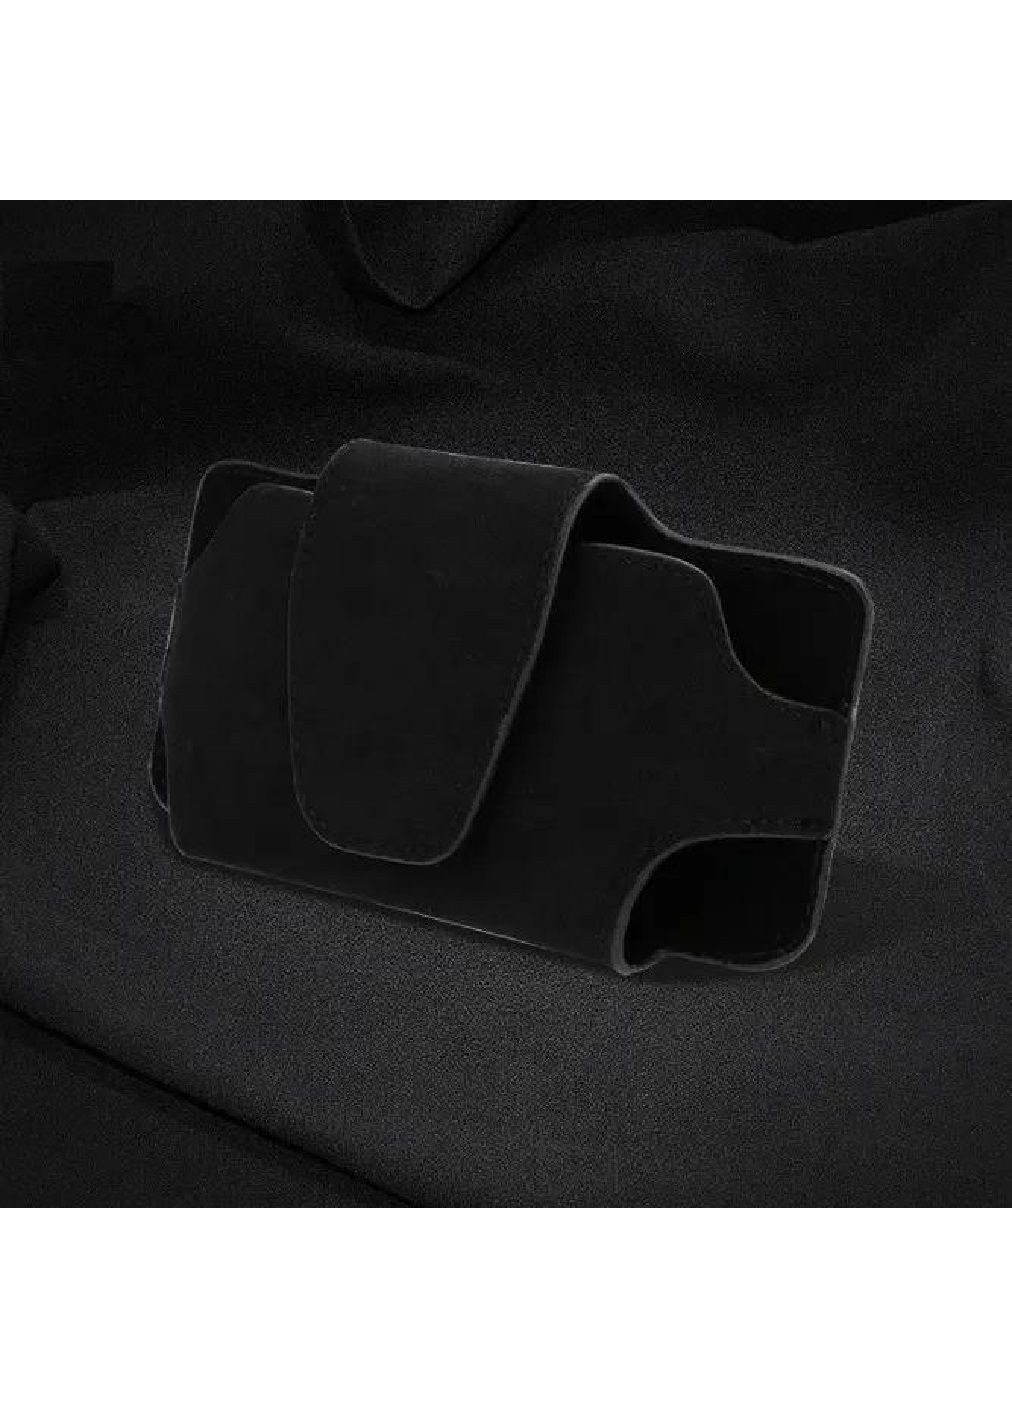 Органайзер чехол холдер для очков телефона на солнцезащитный козырек в салон машины автомобиля 10х17.5 см (477078-Prob) Черный Unbranded (294050692)